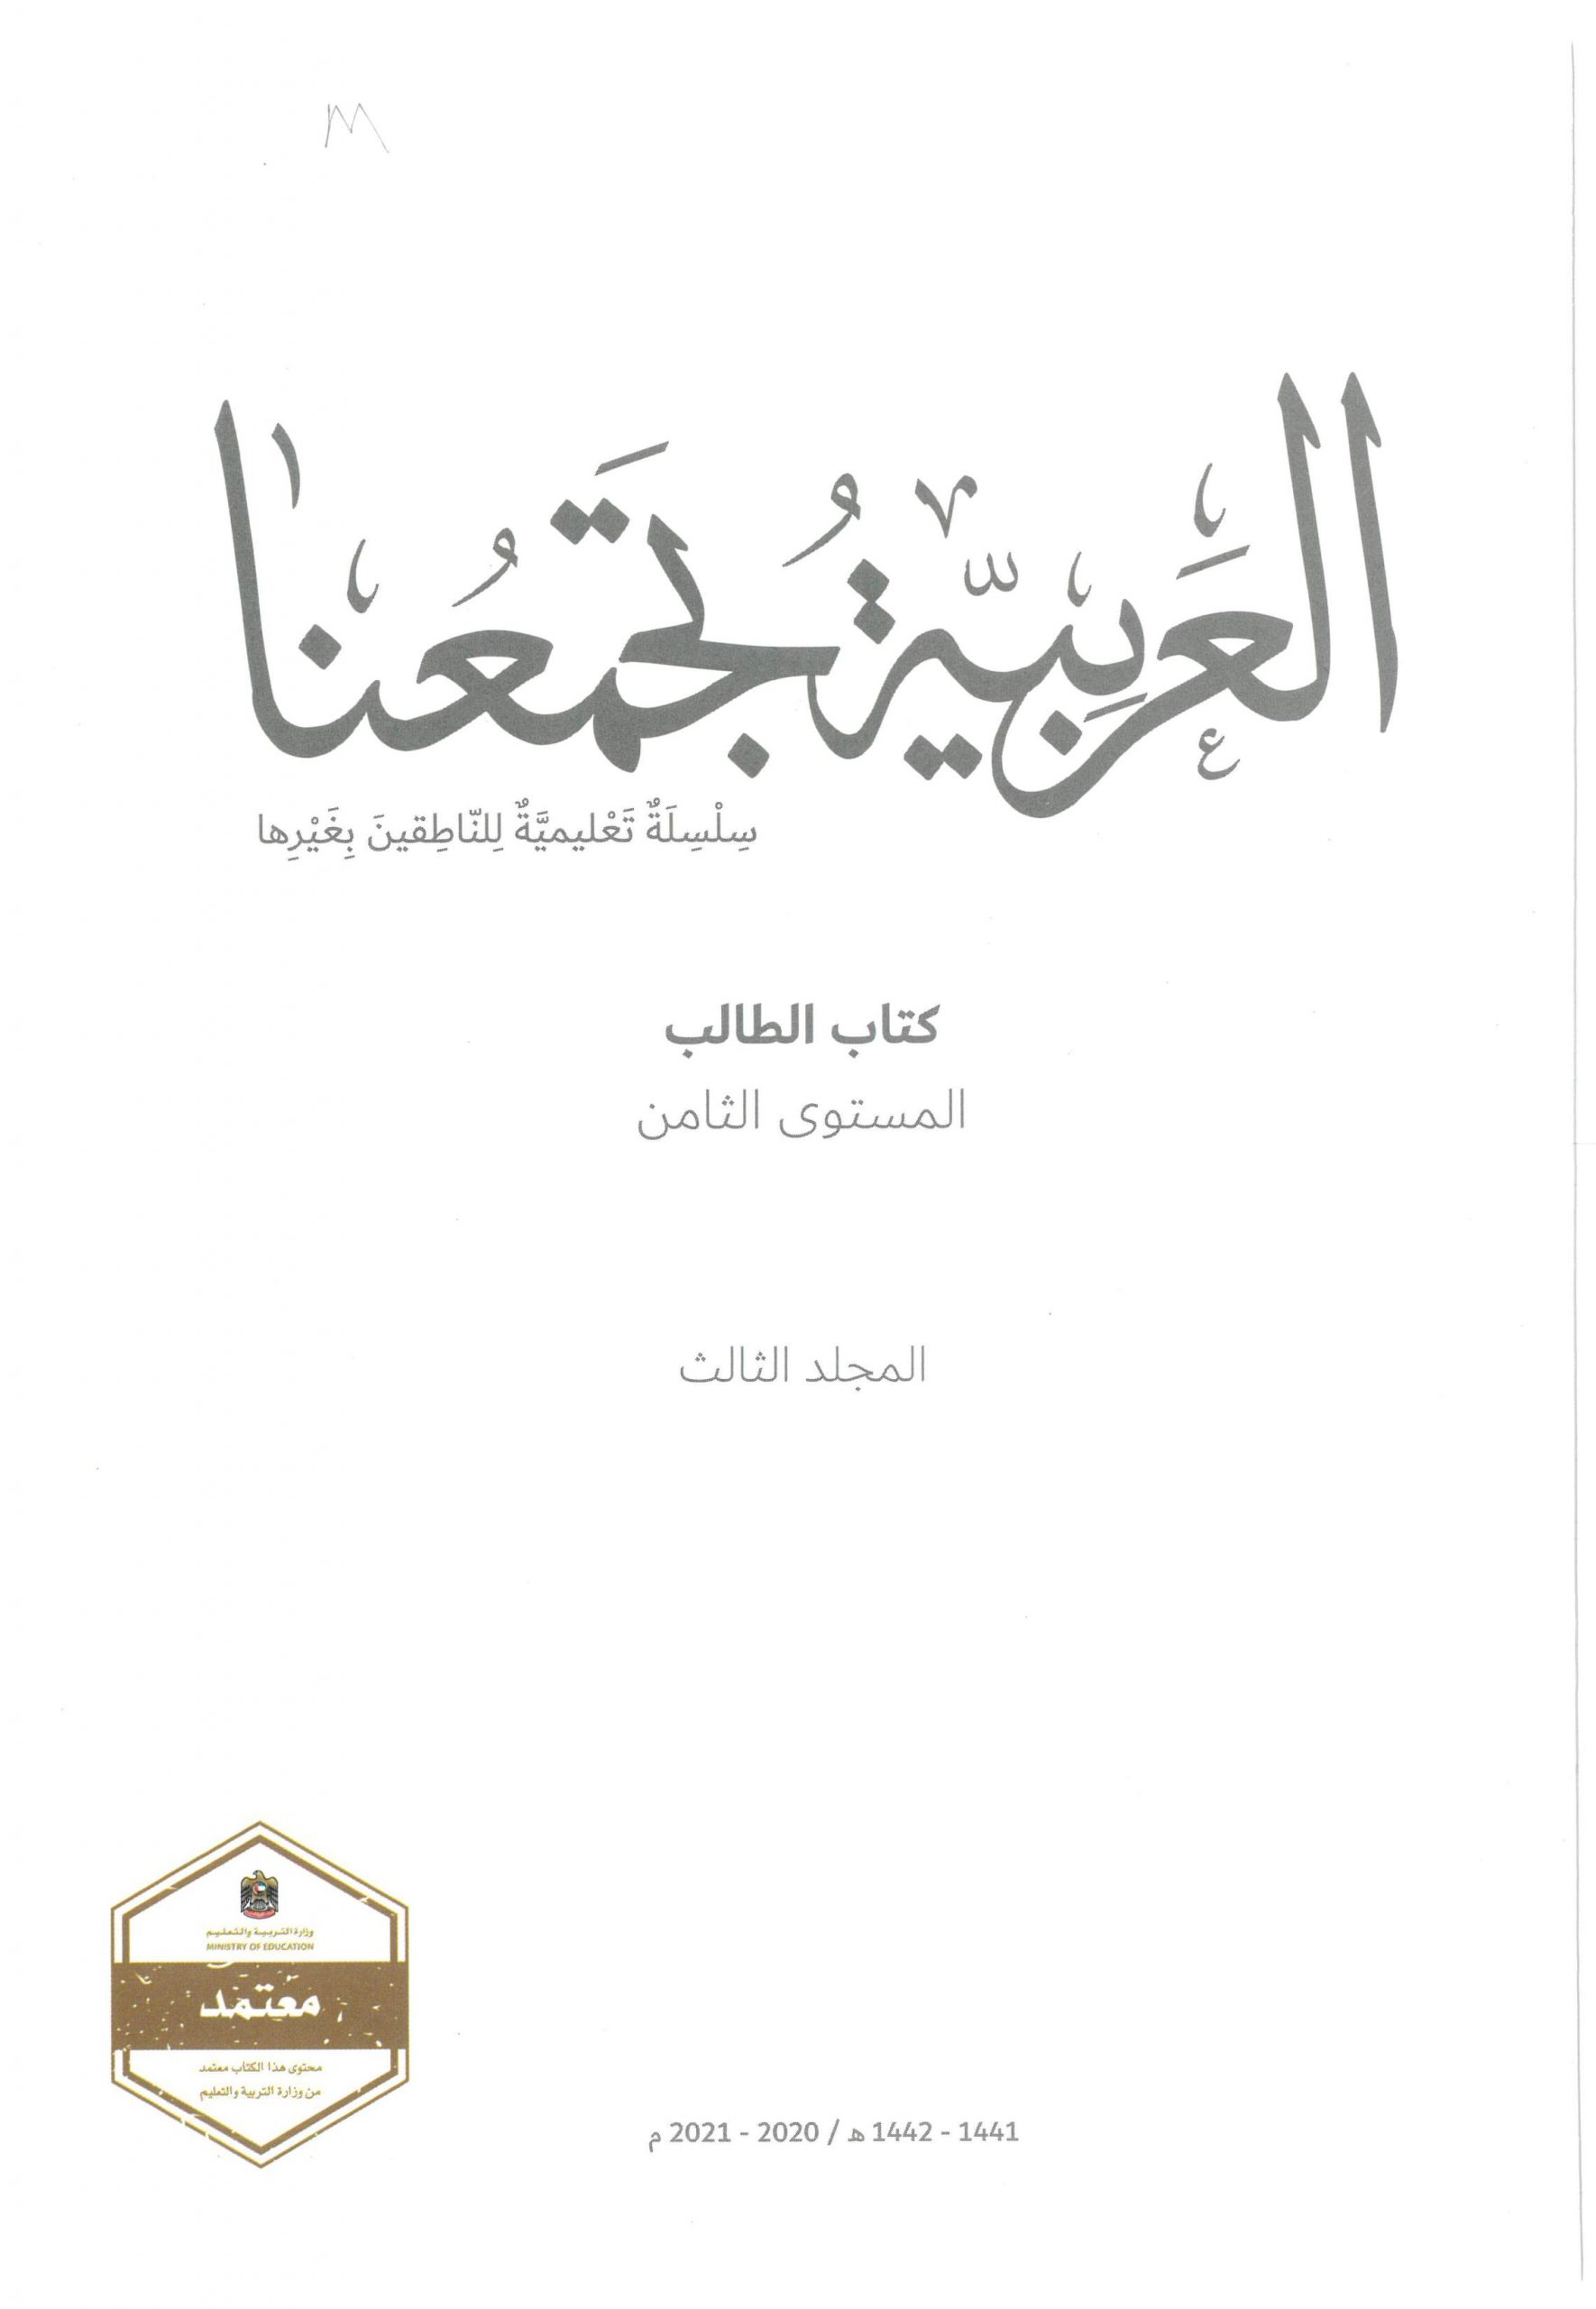 كتاب الطالب لغير الناطقين بها الفصل الدراسي الثالث 2020-2021 الصف الثامن مادة اللغة العربية